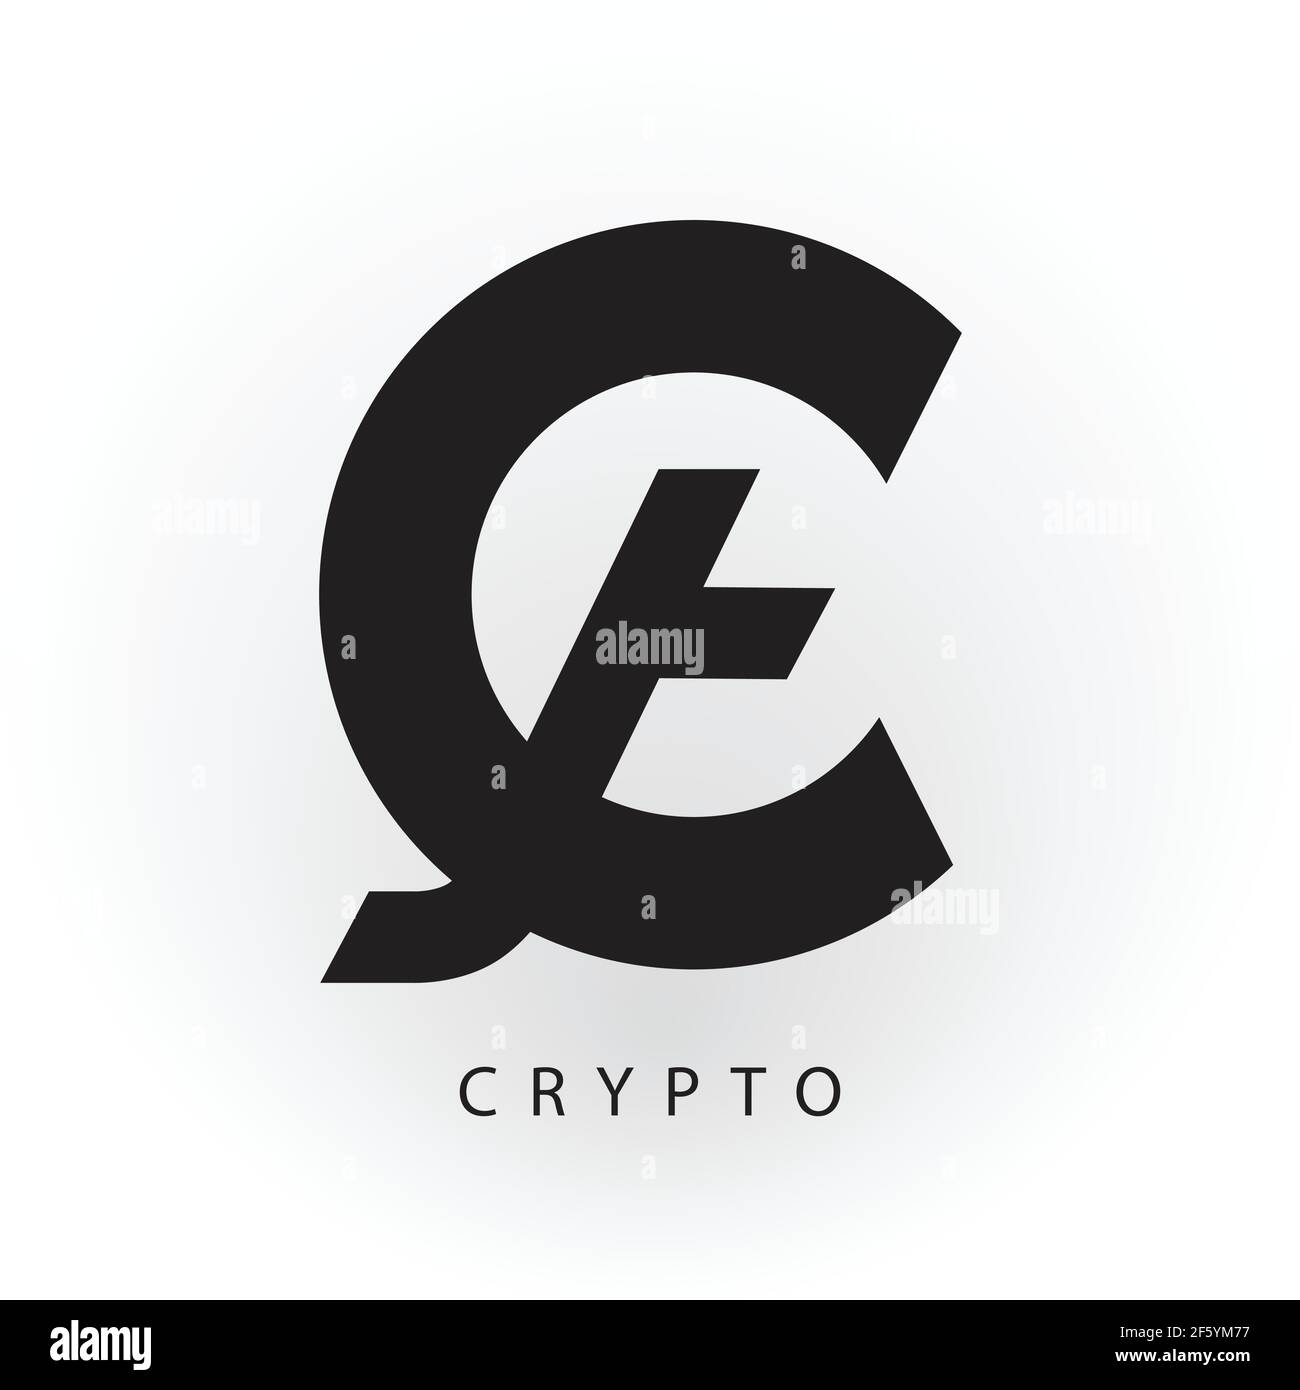 Crypto-monnaie, jetons numériques de technologie de paiement décentralisé logo, icône, symbole, marque, identité industrielle Illustration de Vecteur